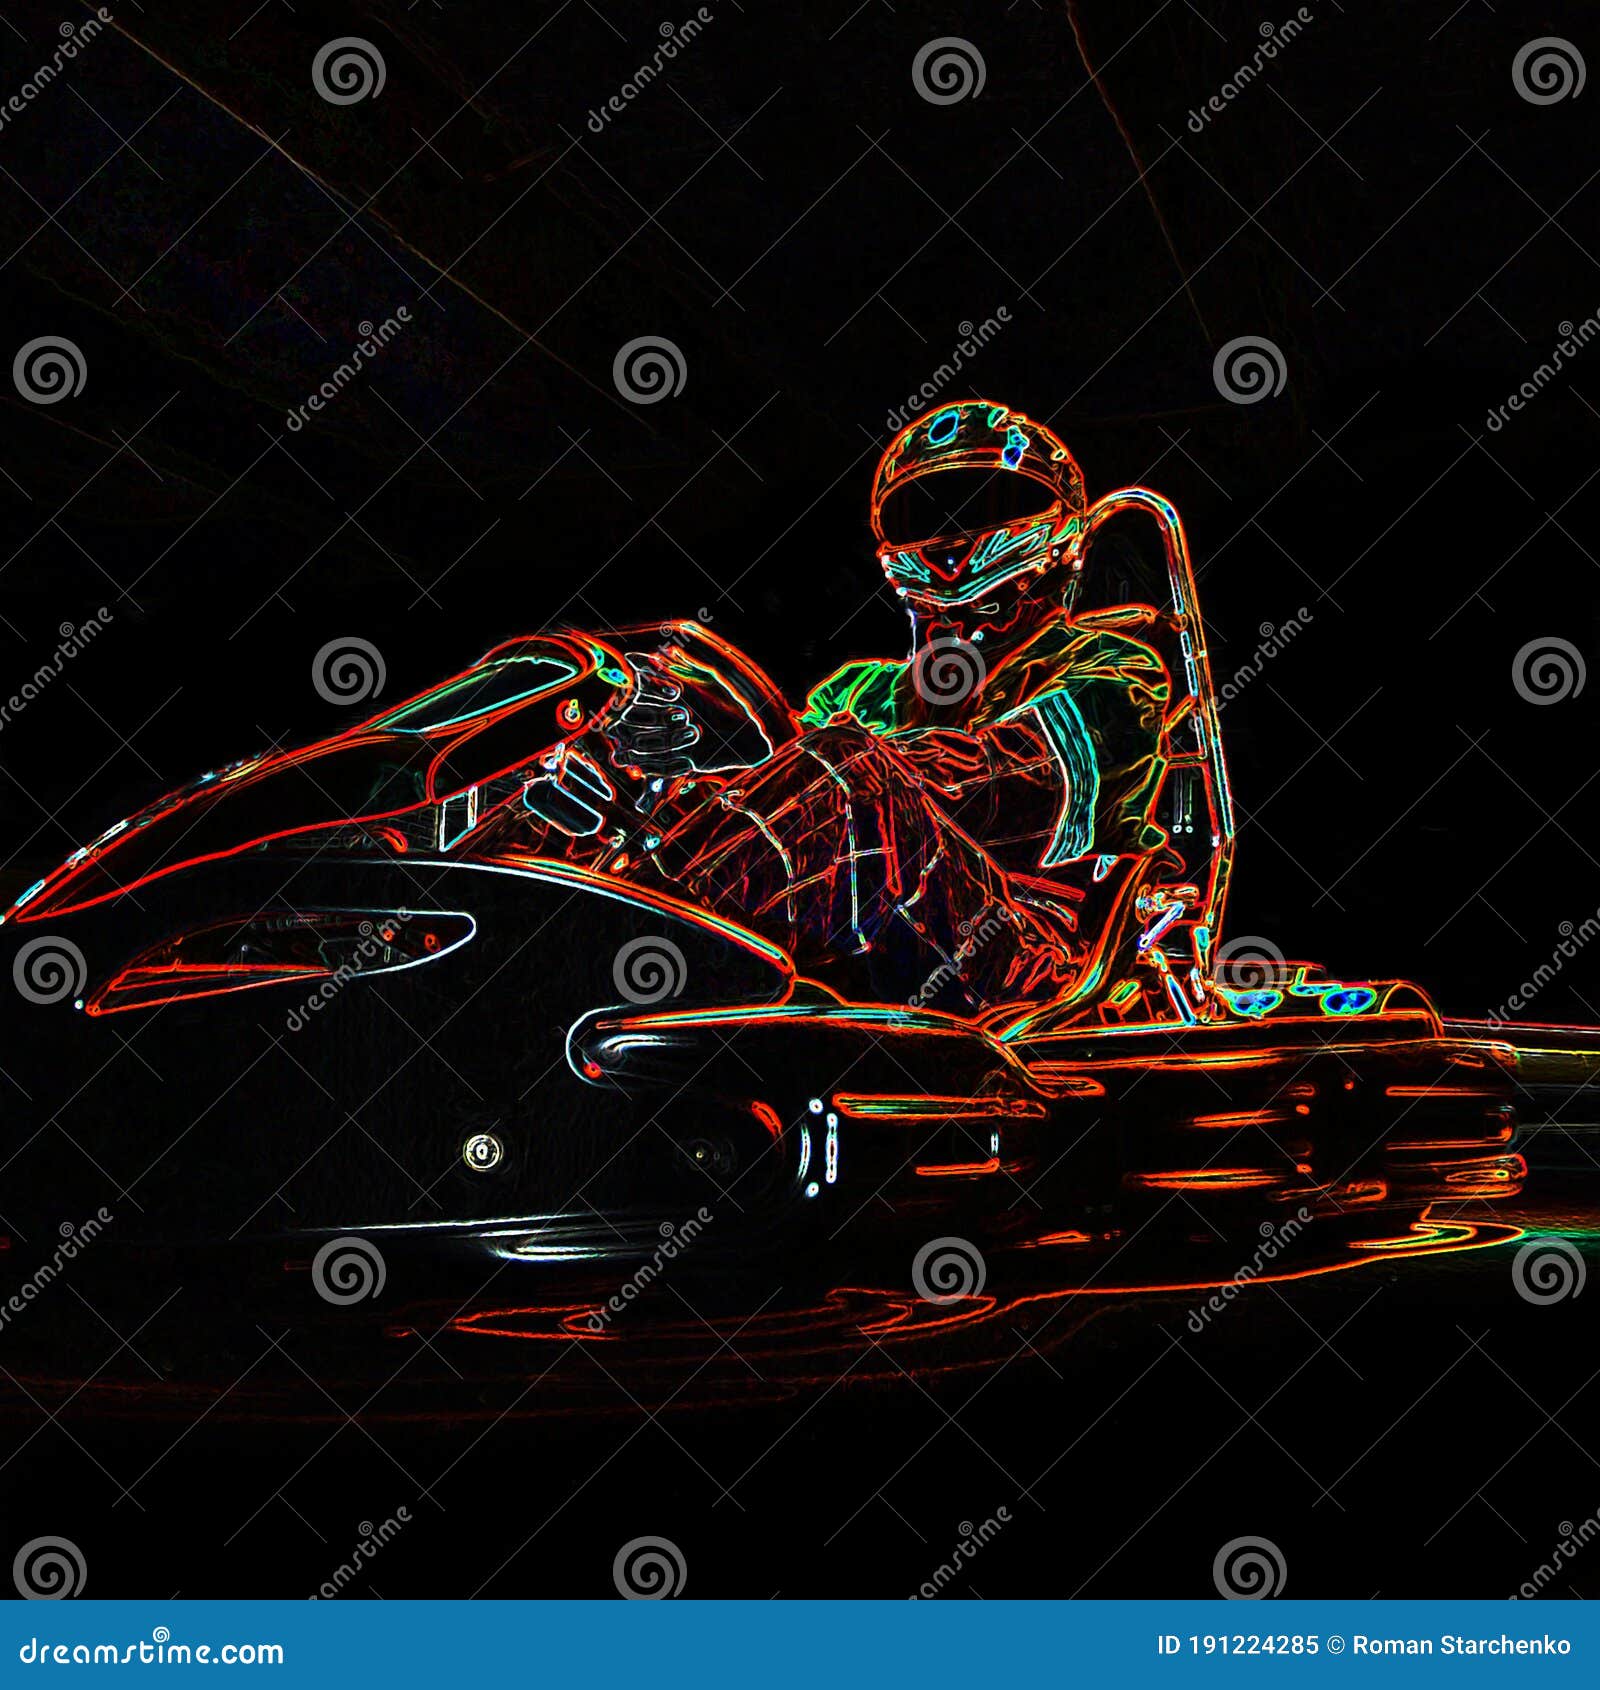 Kart, Das Licht Neonbild Läuft. Mann Karting Fahrzeug Auf Kurs Stockbild -  Bild von rennläufer, nacht: 191224285